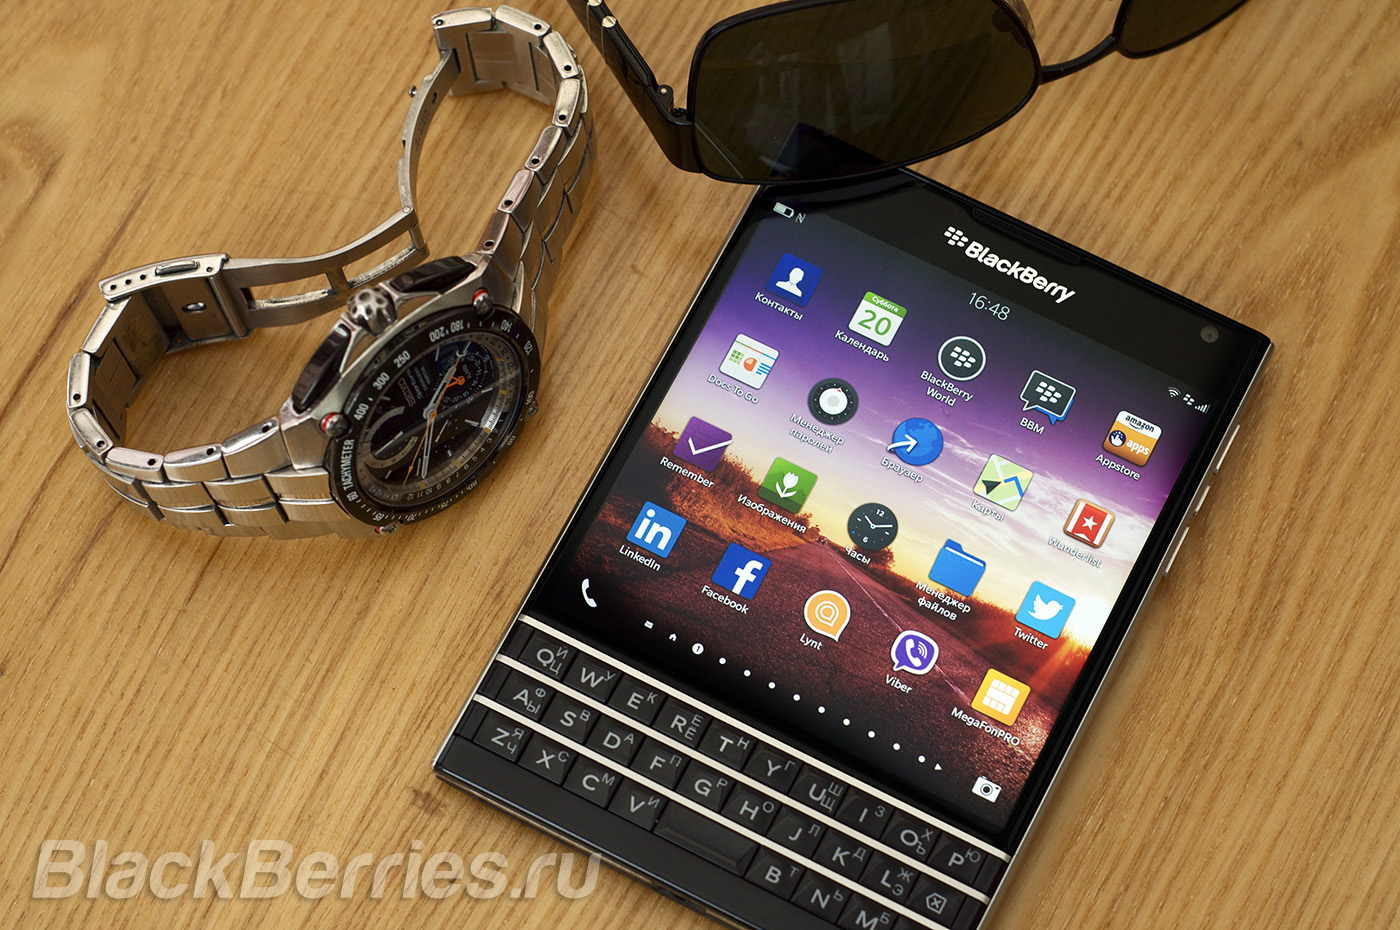 BlackBerry-Passport-Apps-20-06-17